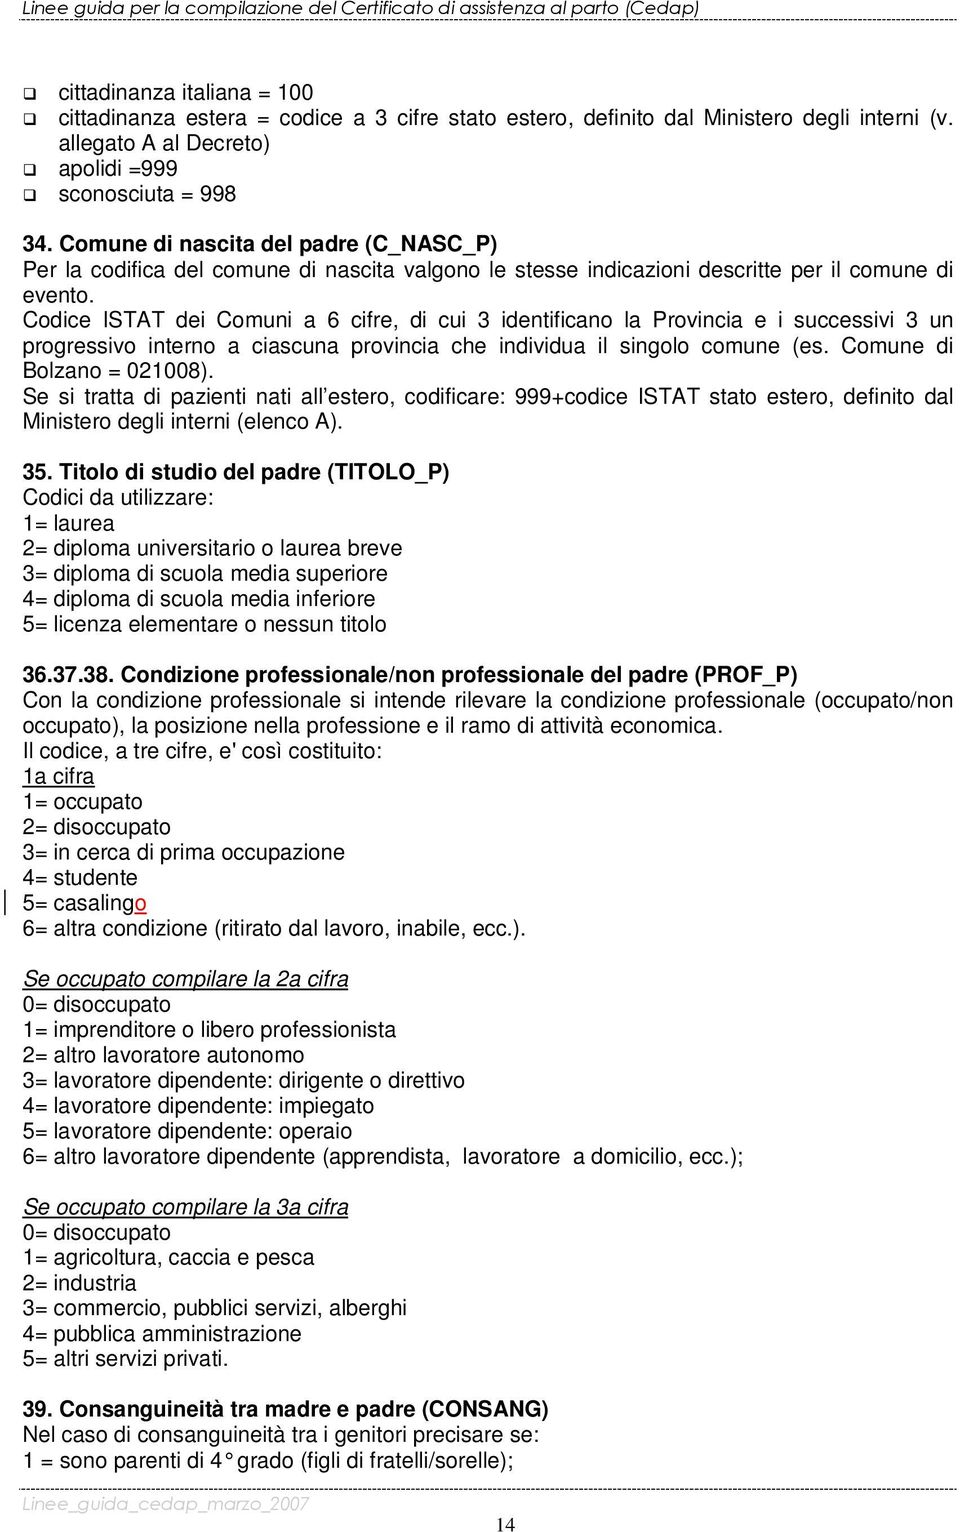 Codice ISTAT dei Comuni a 6 cifre, di cui 3 identificano la Provincia e i successivi 3 un progressivo interno a ciascuna provincia che individua il singolo comune (es. Comune di Bolzano = 021008).